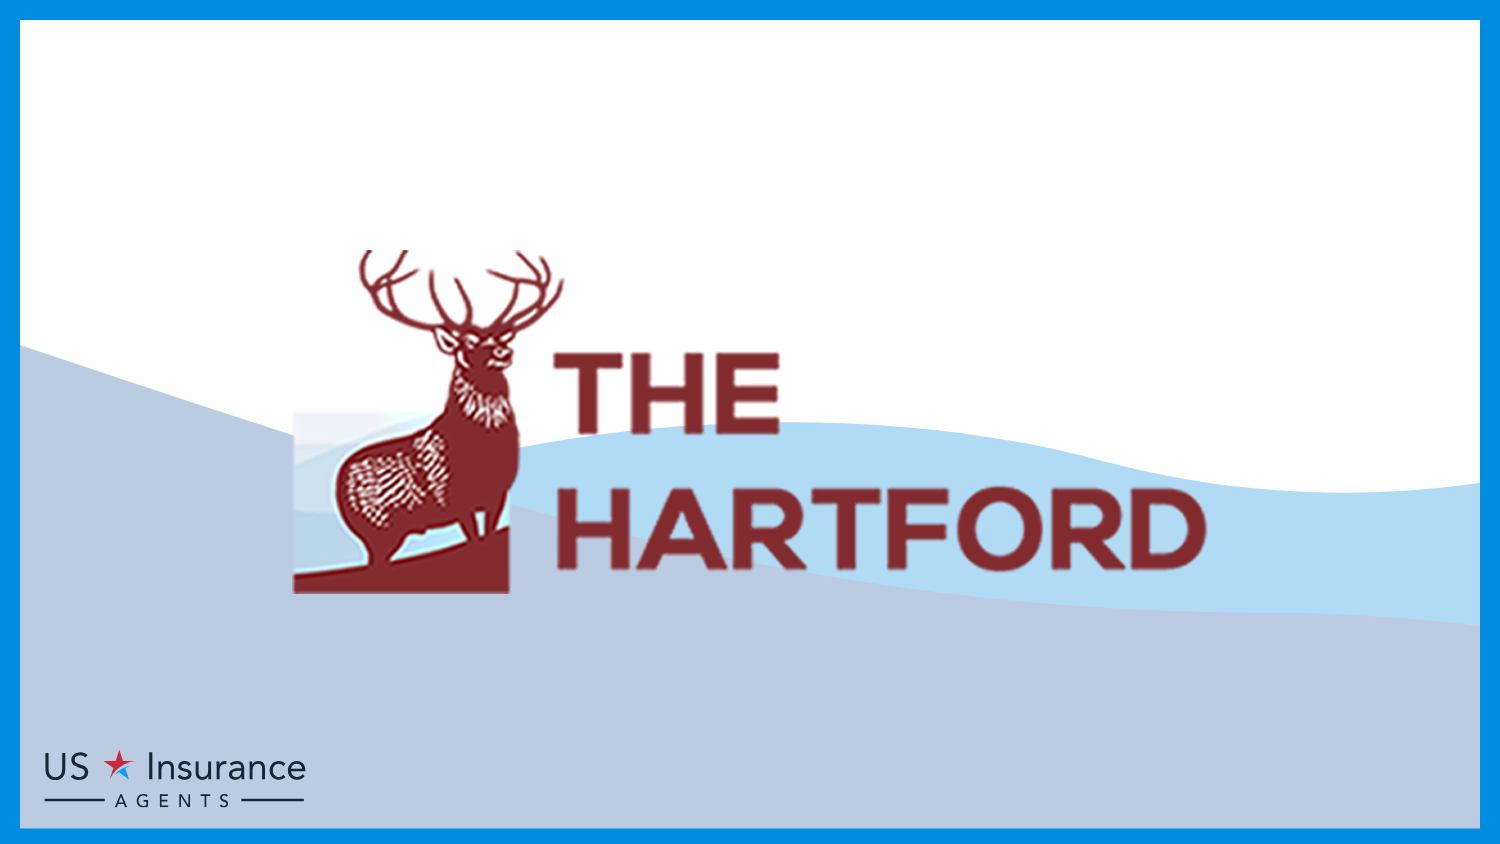 The Hartford: Best Life Insurance for Veterans